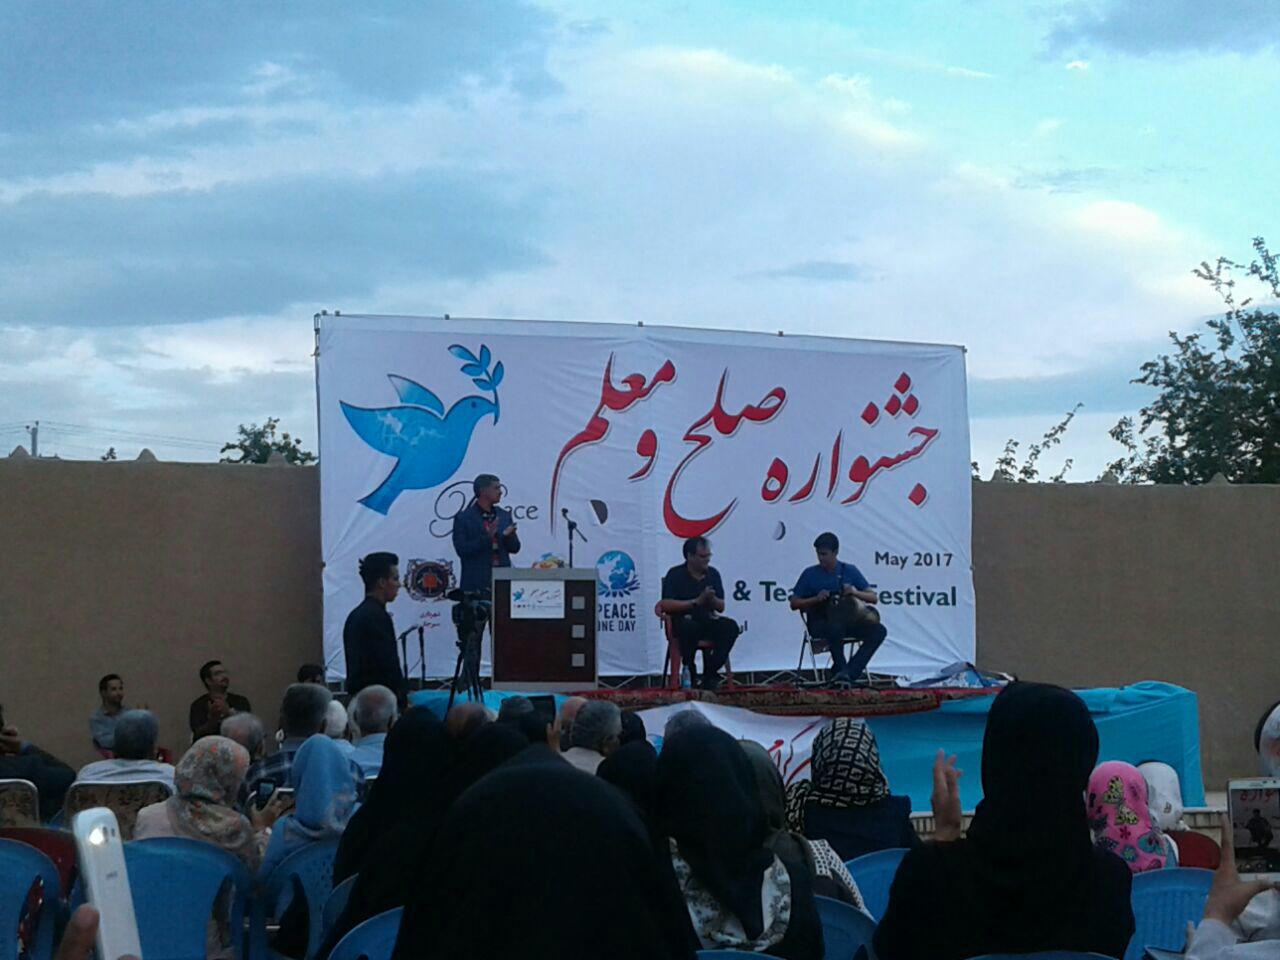 جشنواره صلح و معلم در سیرجان برگزارشد/تصاویر